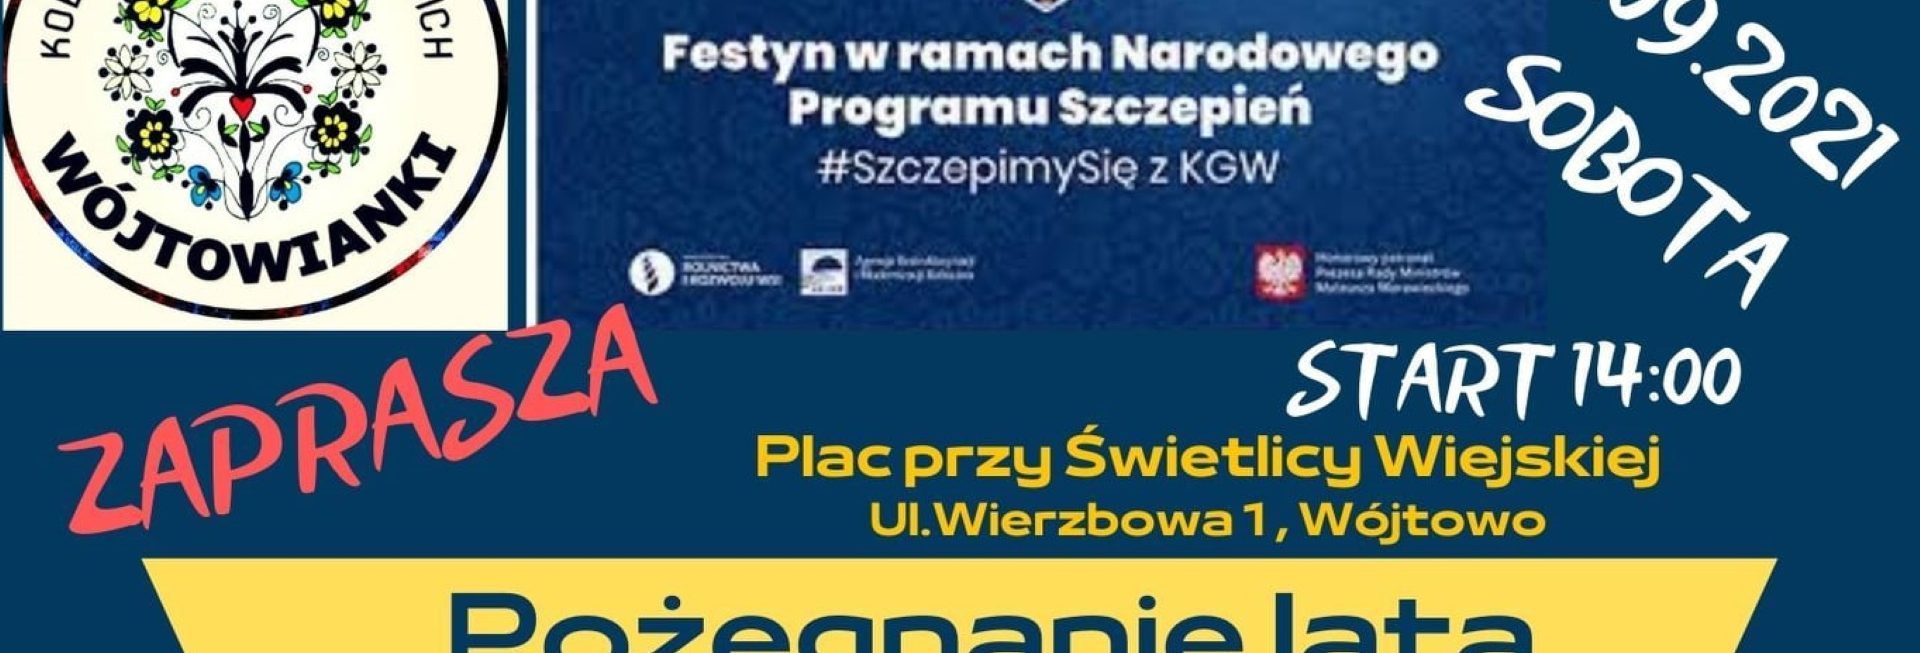 Plakat graficzny zapraszający do Wójtowa na festyn "Pożegnanie Lata - zdrowo i sportowo" - Wójtowo 2021. Na plakacie napisy i szczegółowy program imprezy.